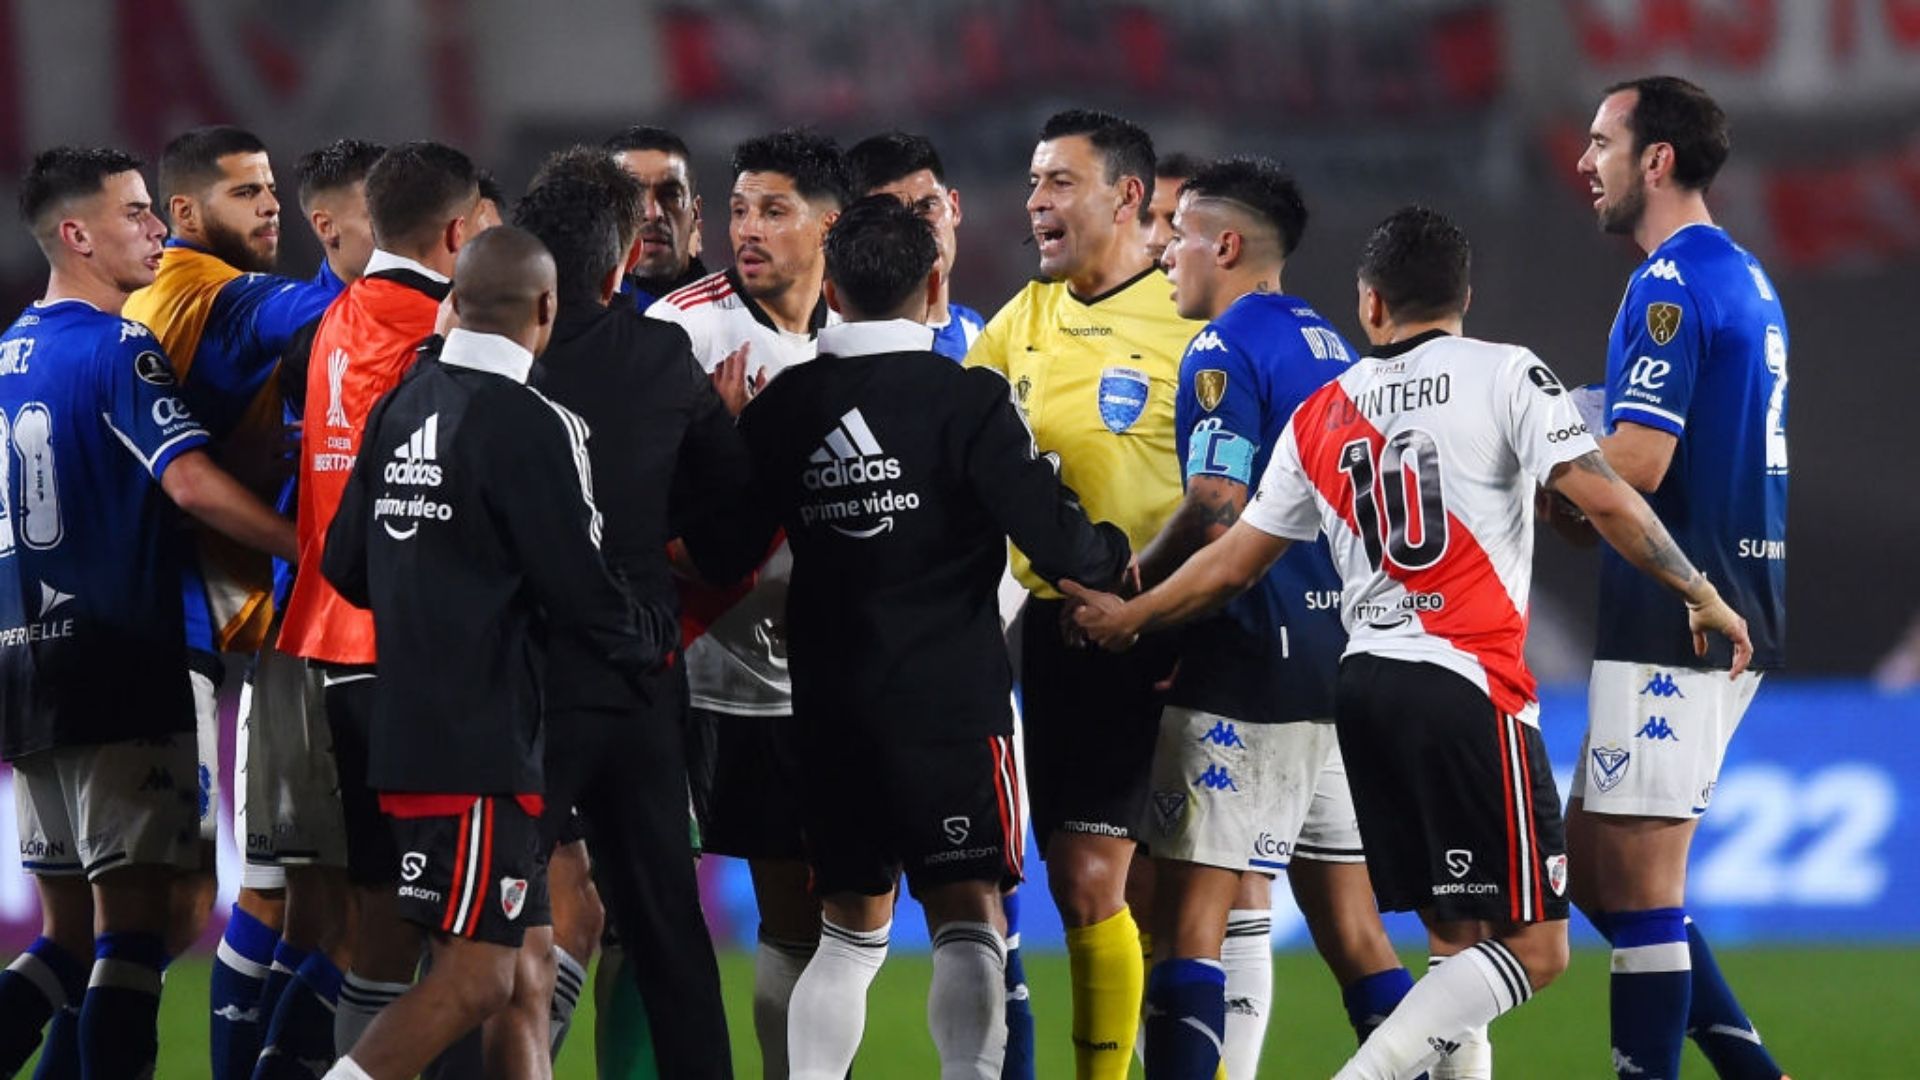 Jogadores do River Plate questionando o árbitro após a marcação